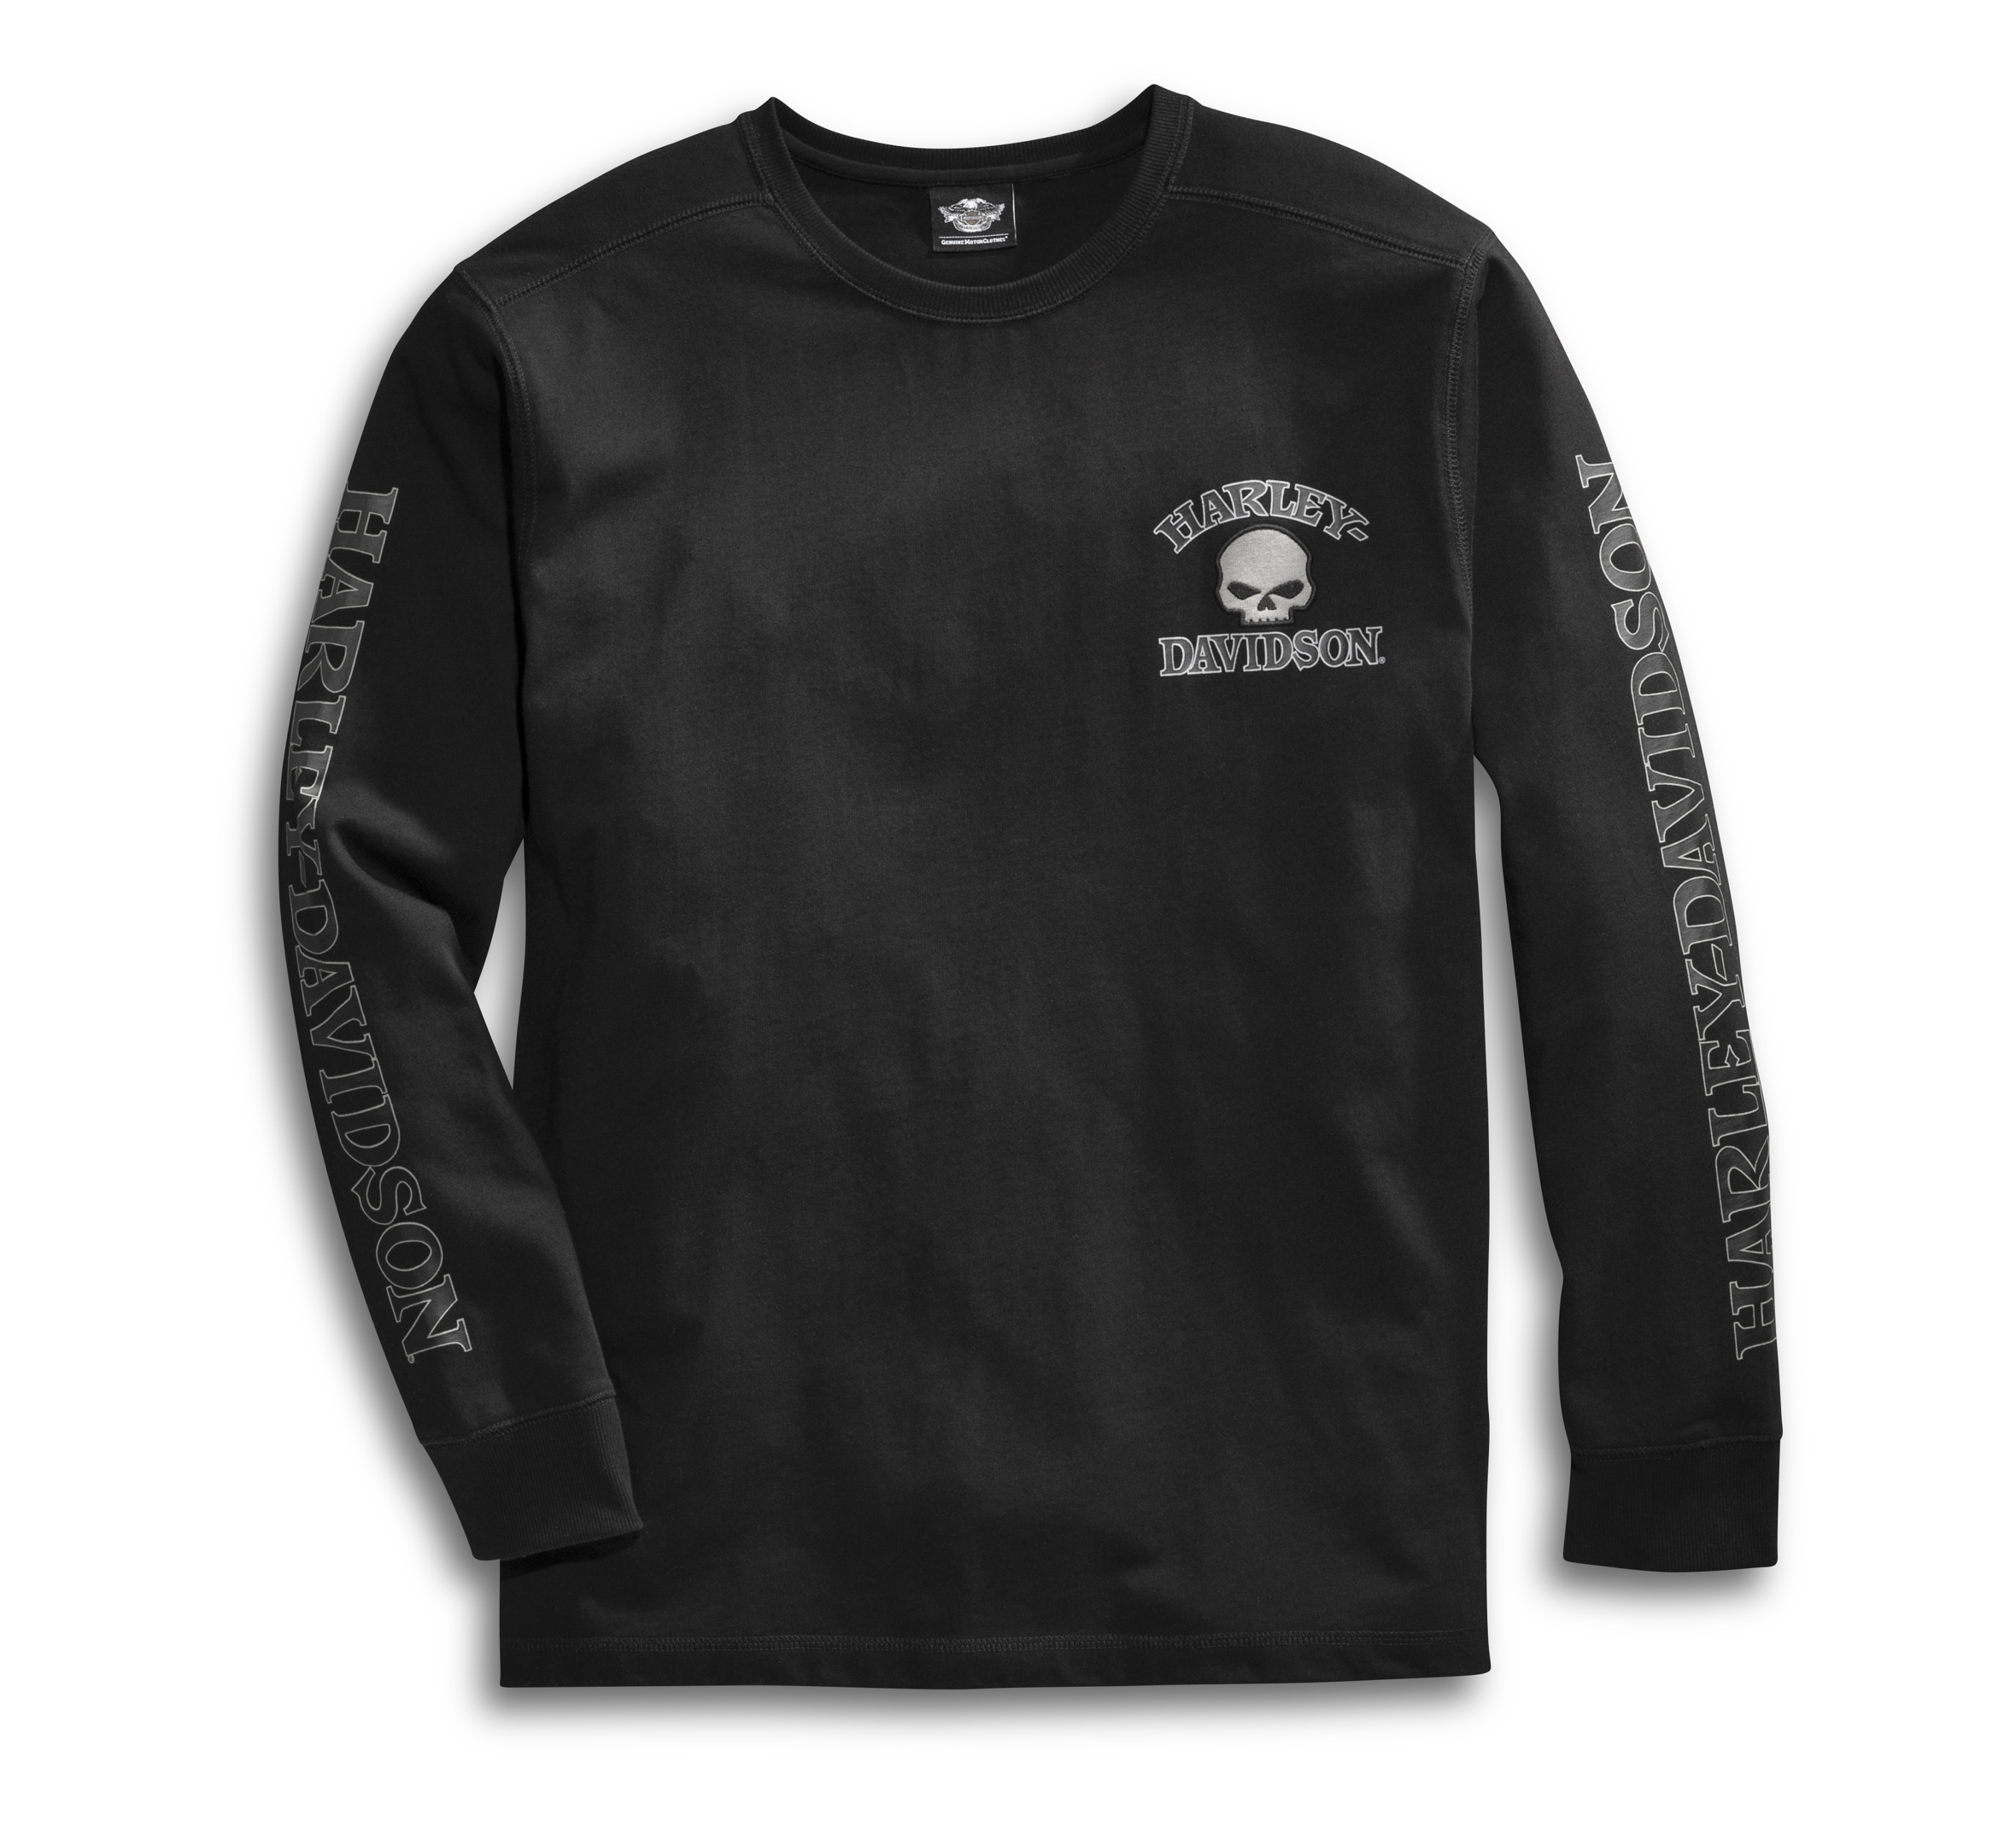 Camp Leatherneck Harley-Davidson Military Men's Black Skull Graphic T-Shirt